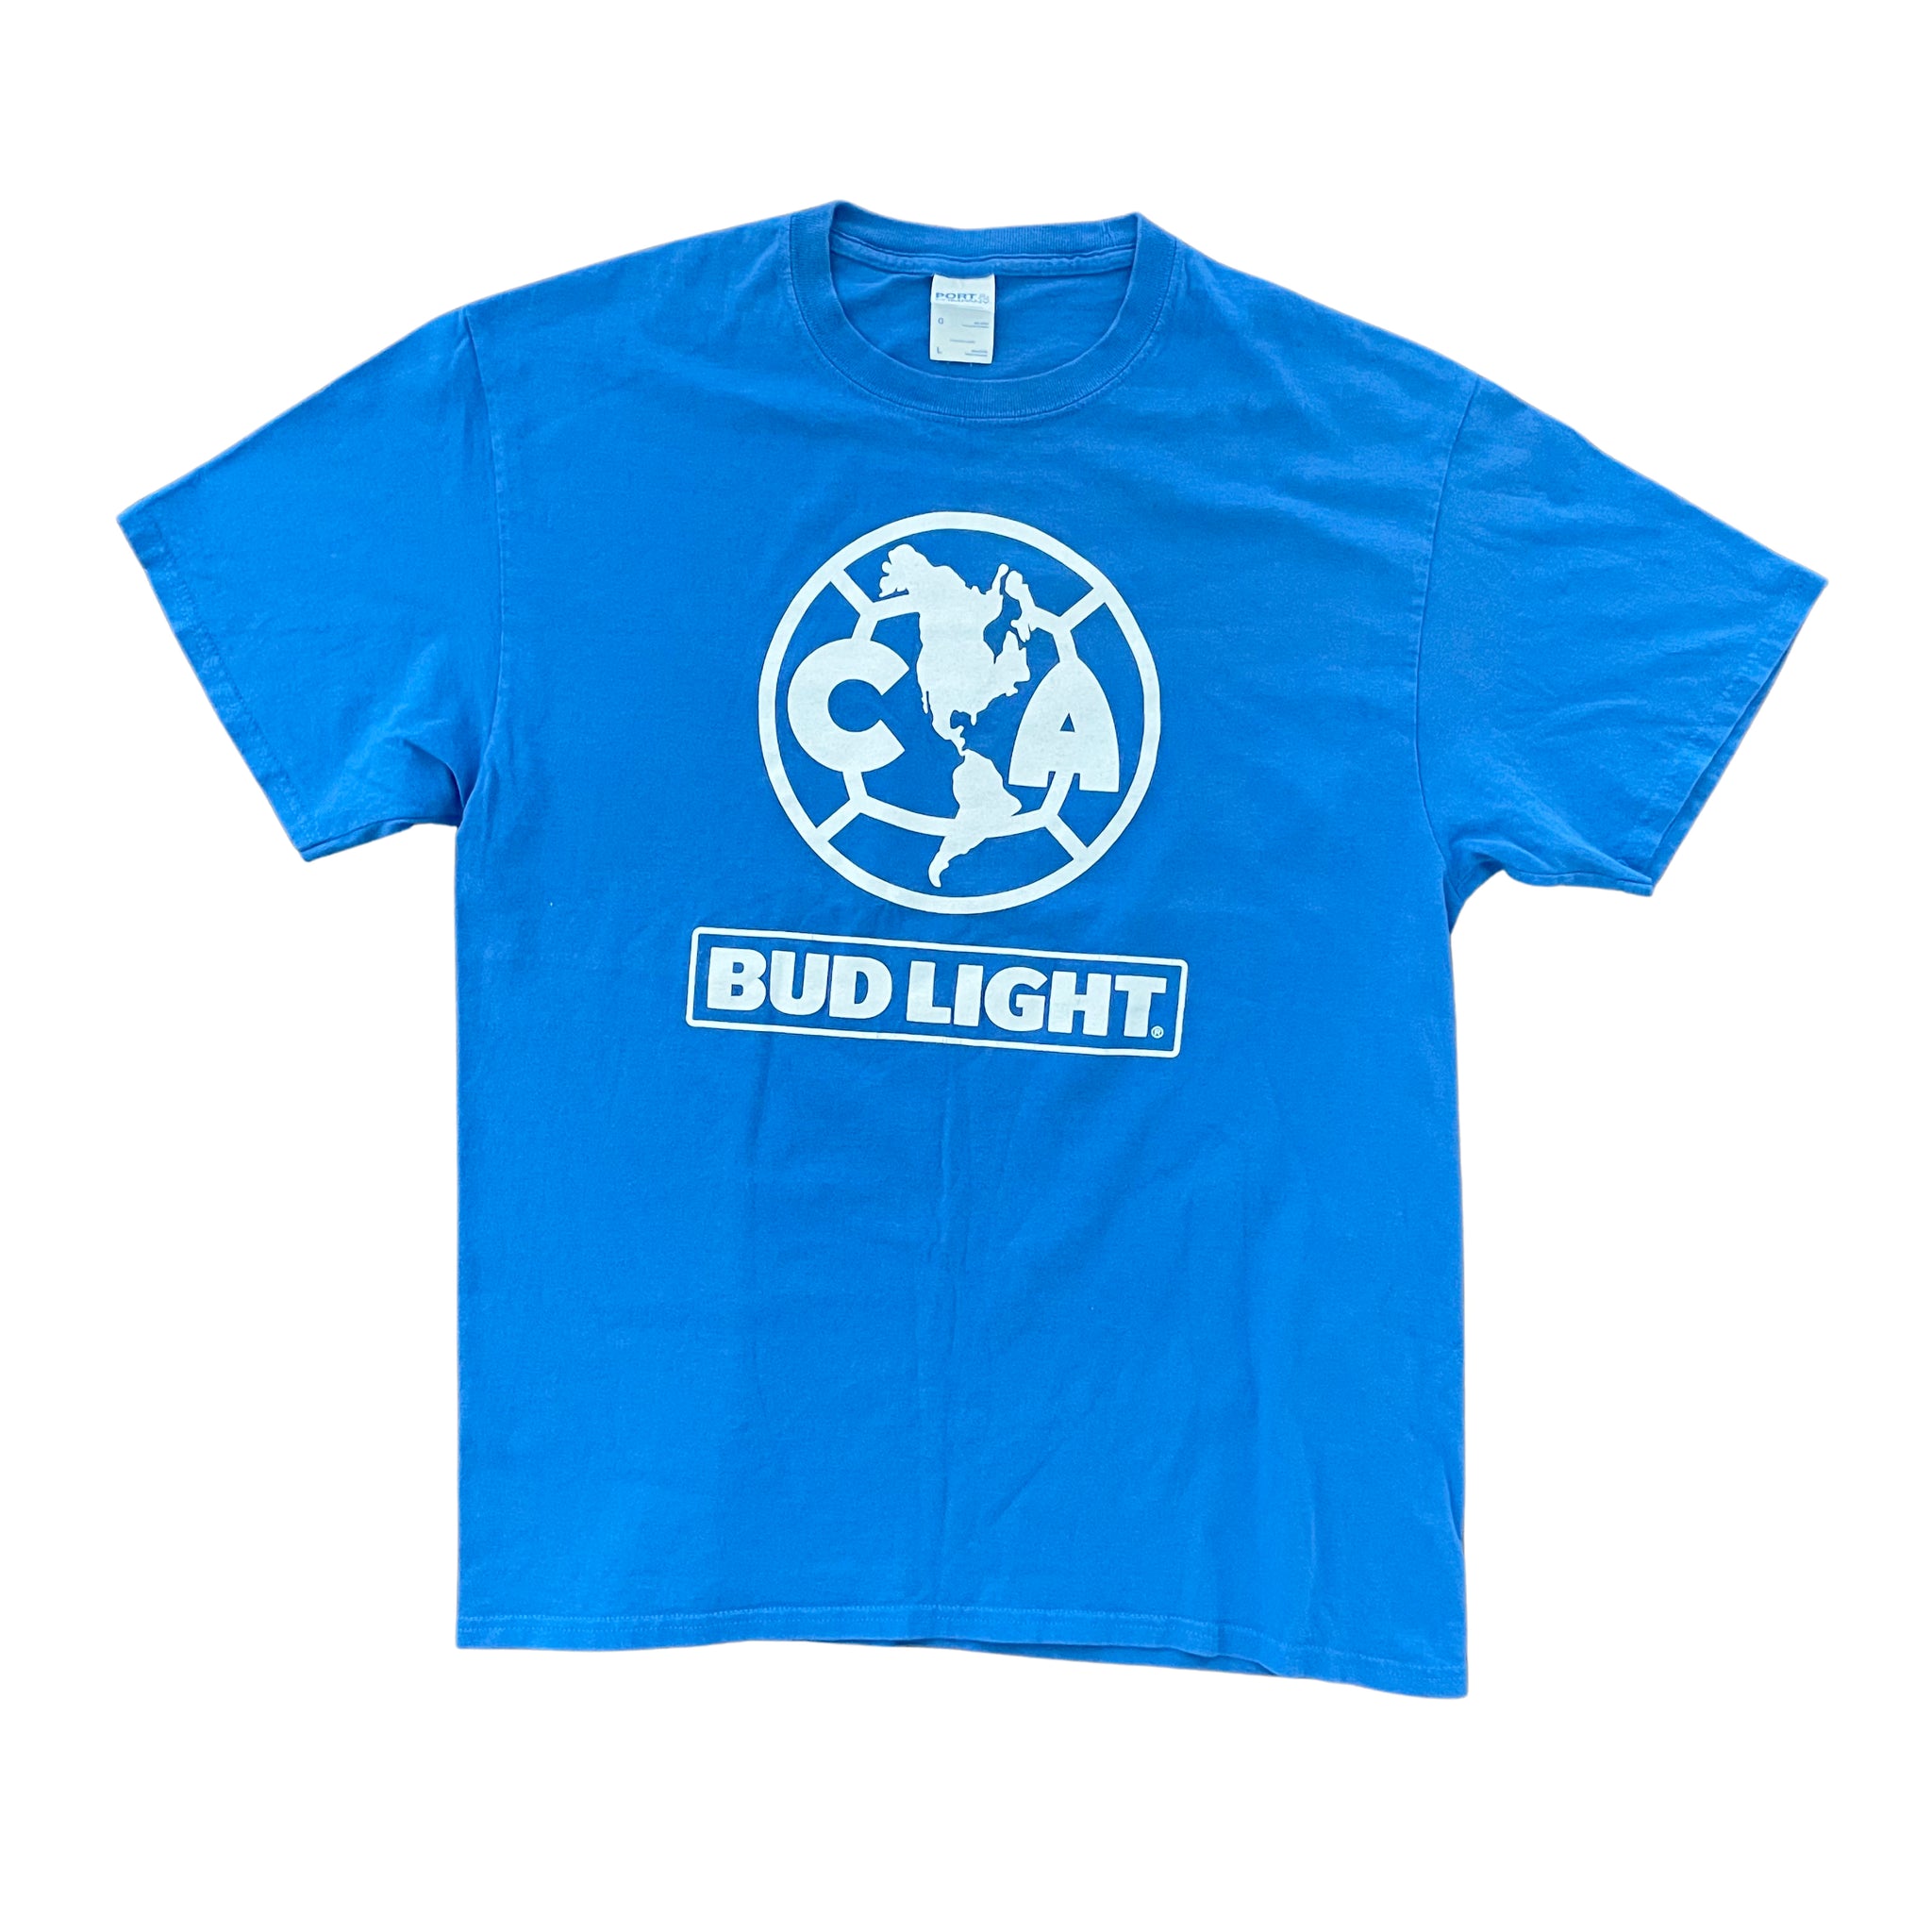 Club America Bud Light T-Shirt - M